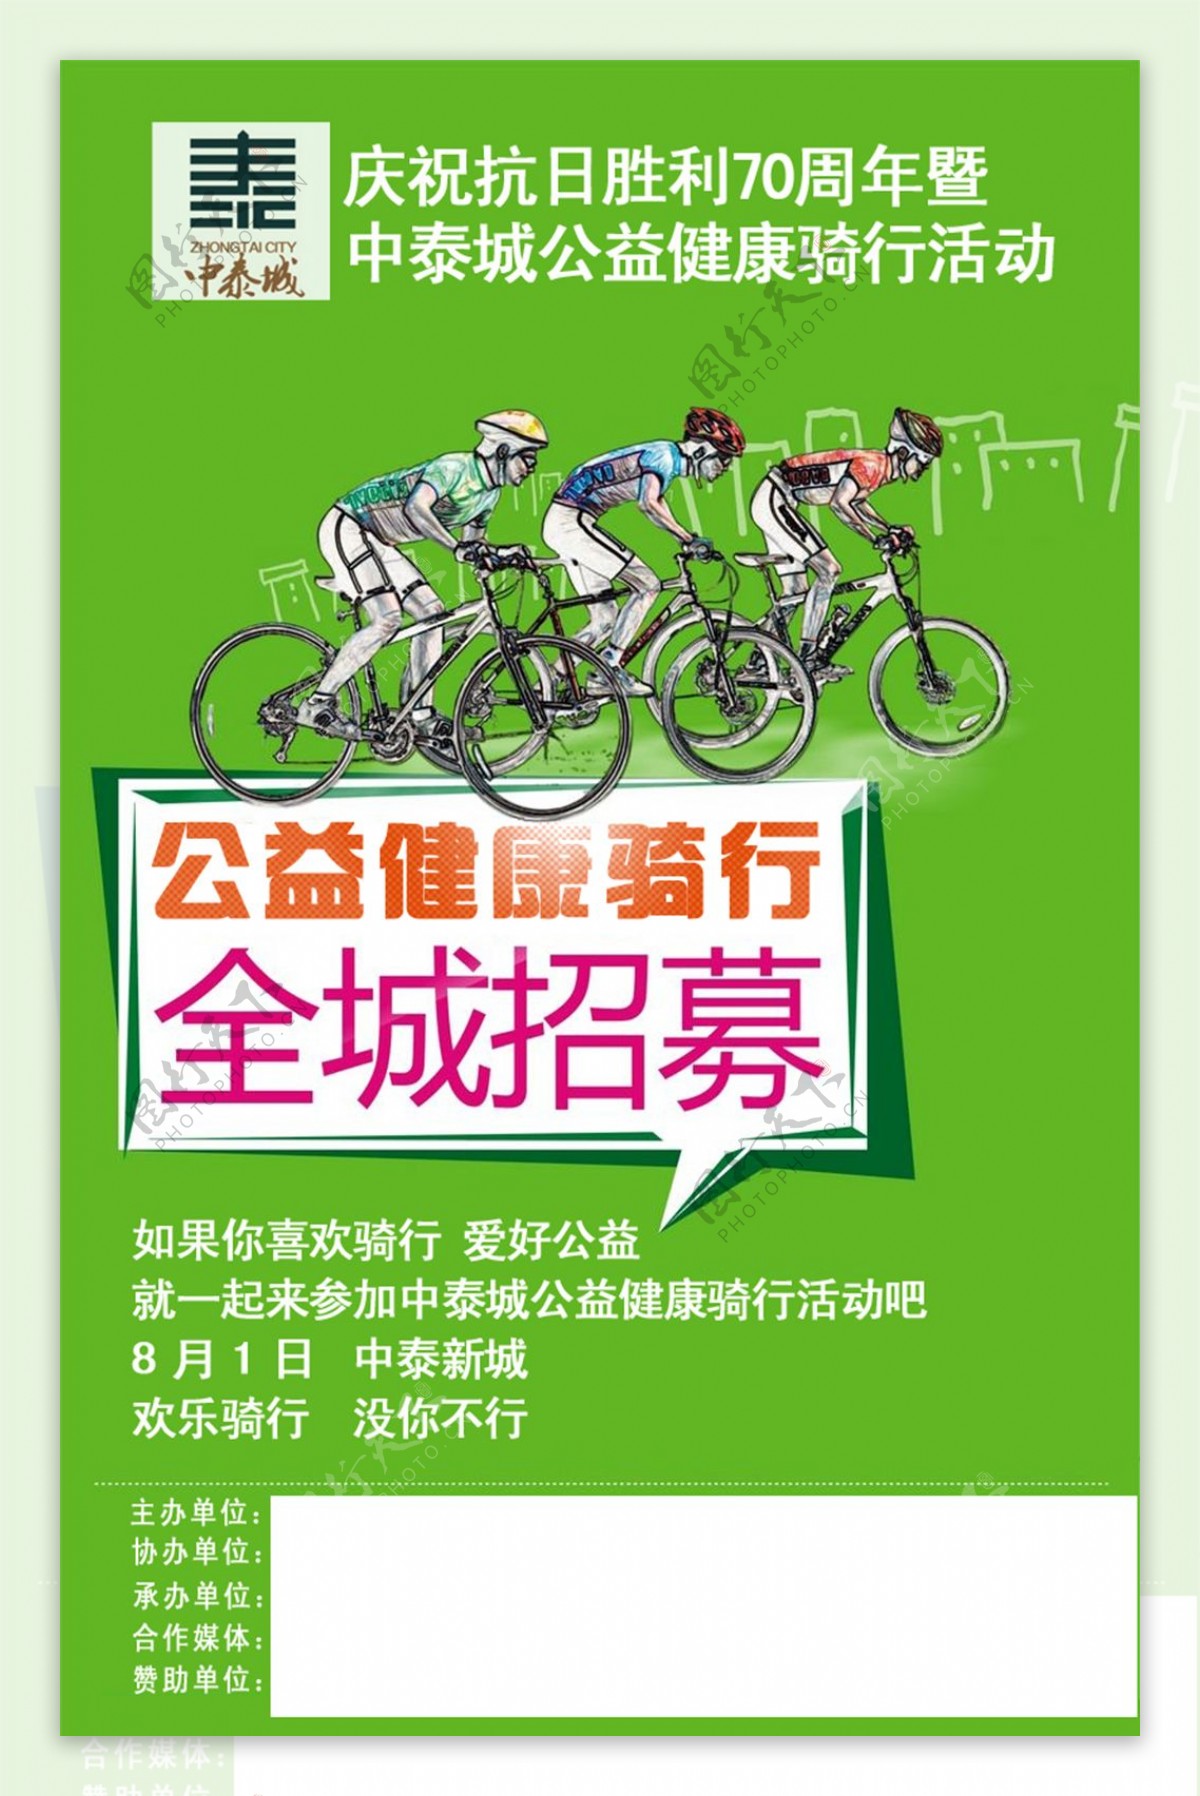 公益健康骑行活动海报